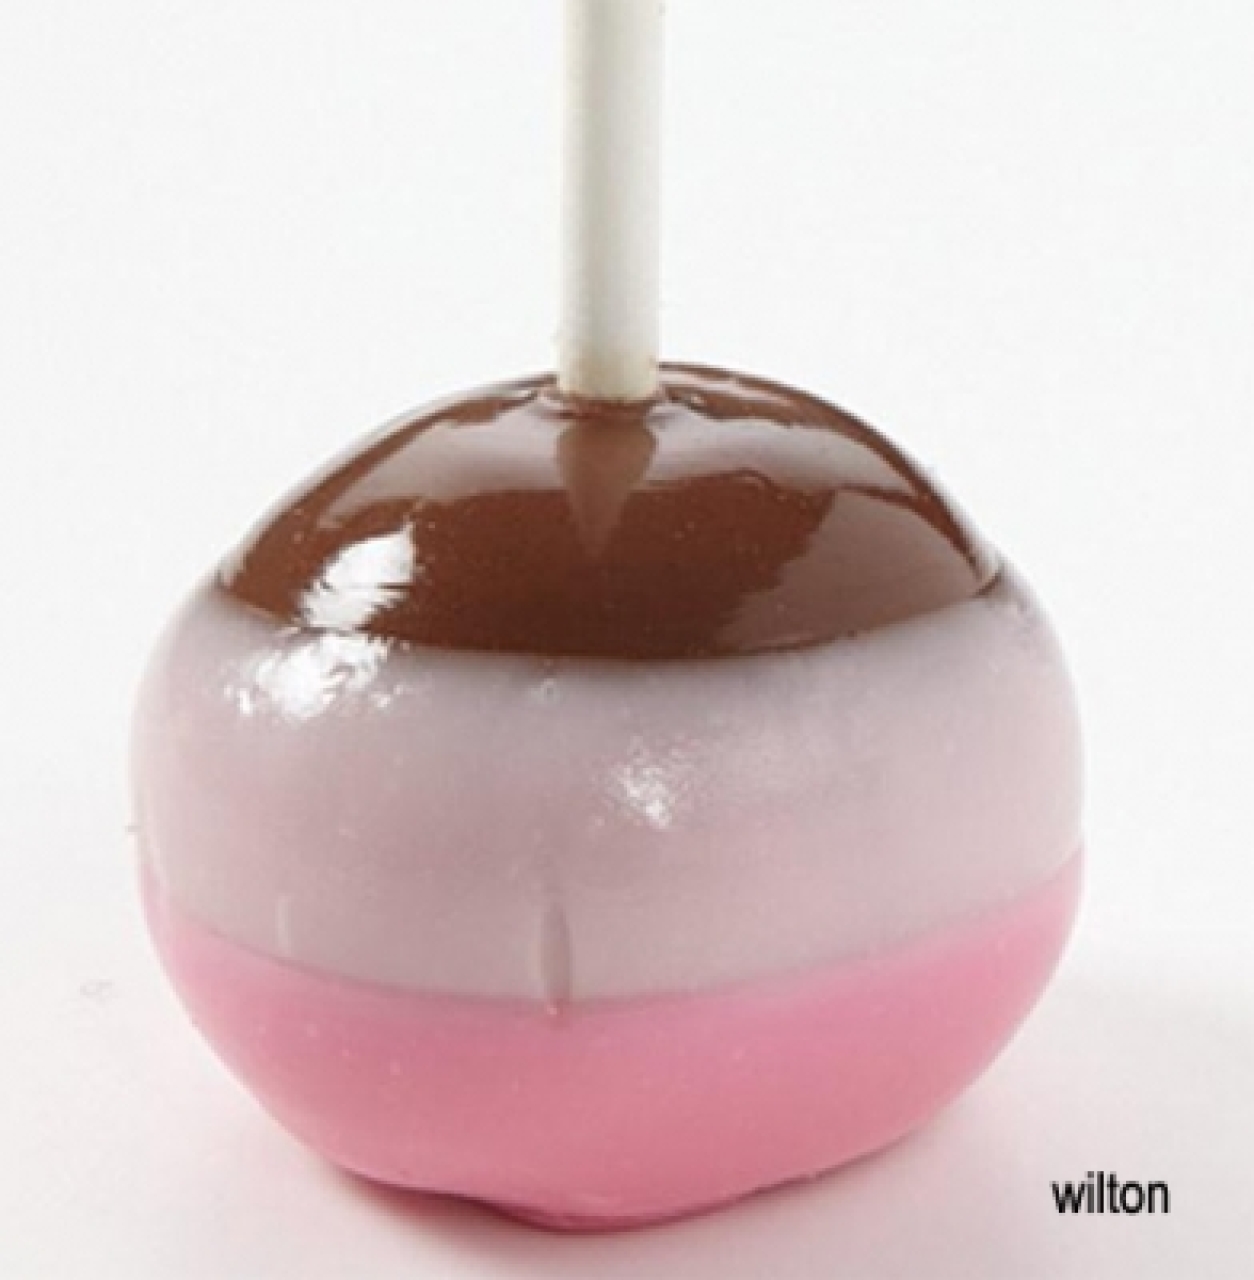  - wilton_candy_dips_cakepop_beispiel